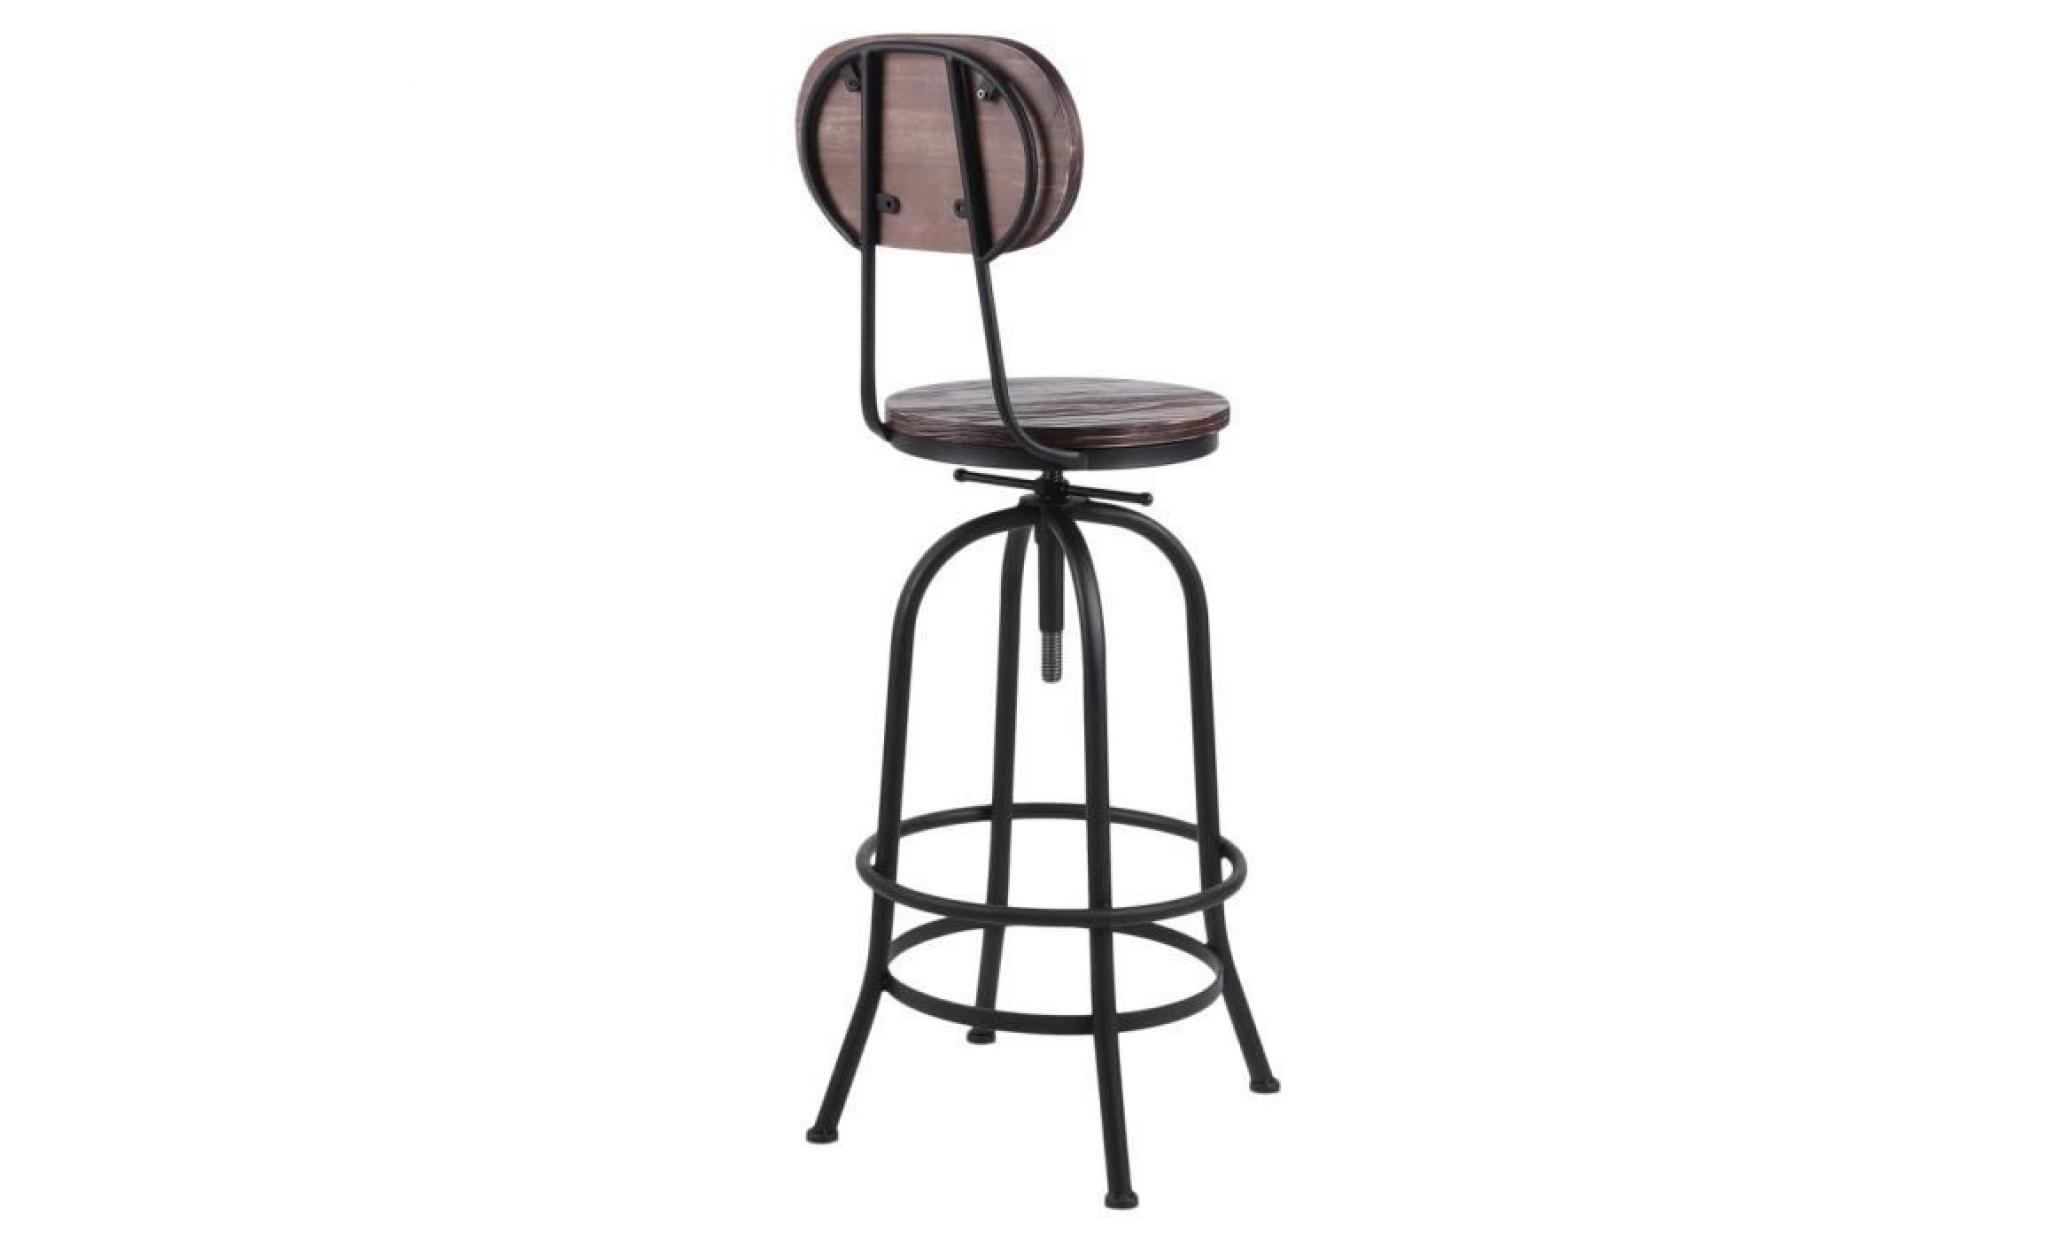 leshp® chaise haute tabouret de bar moderne industrielle pas cher